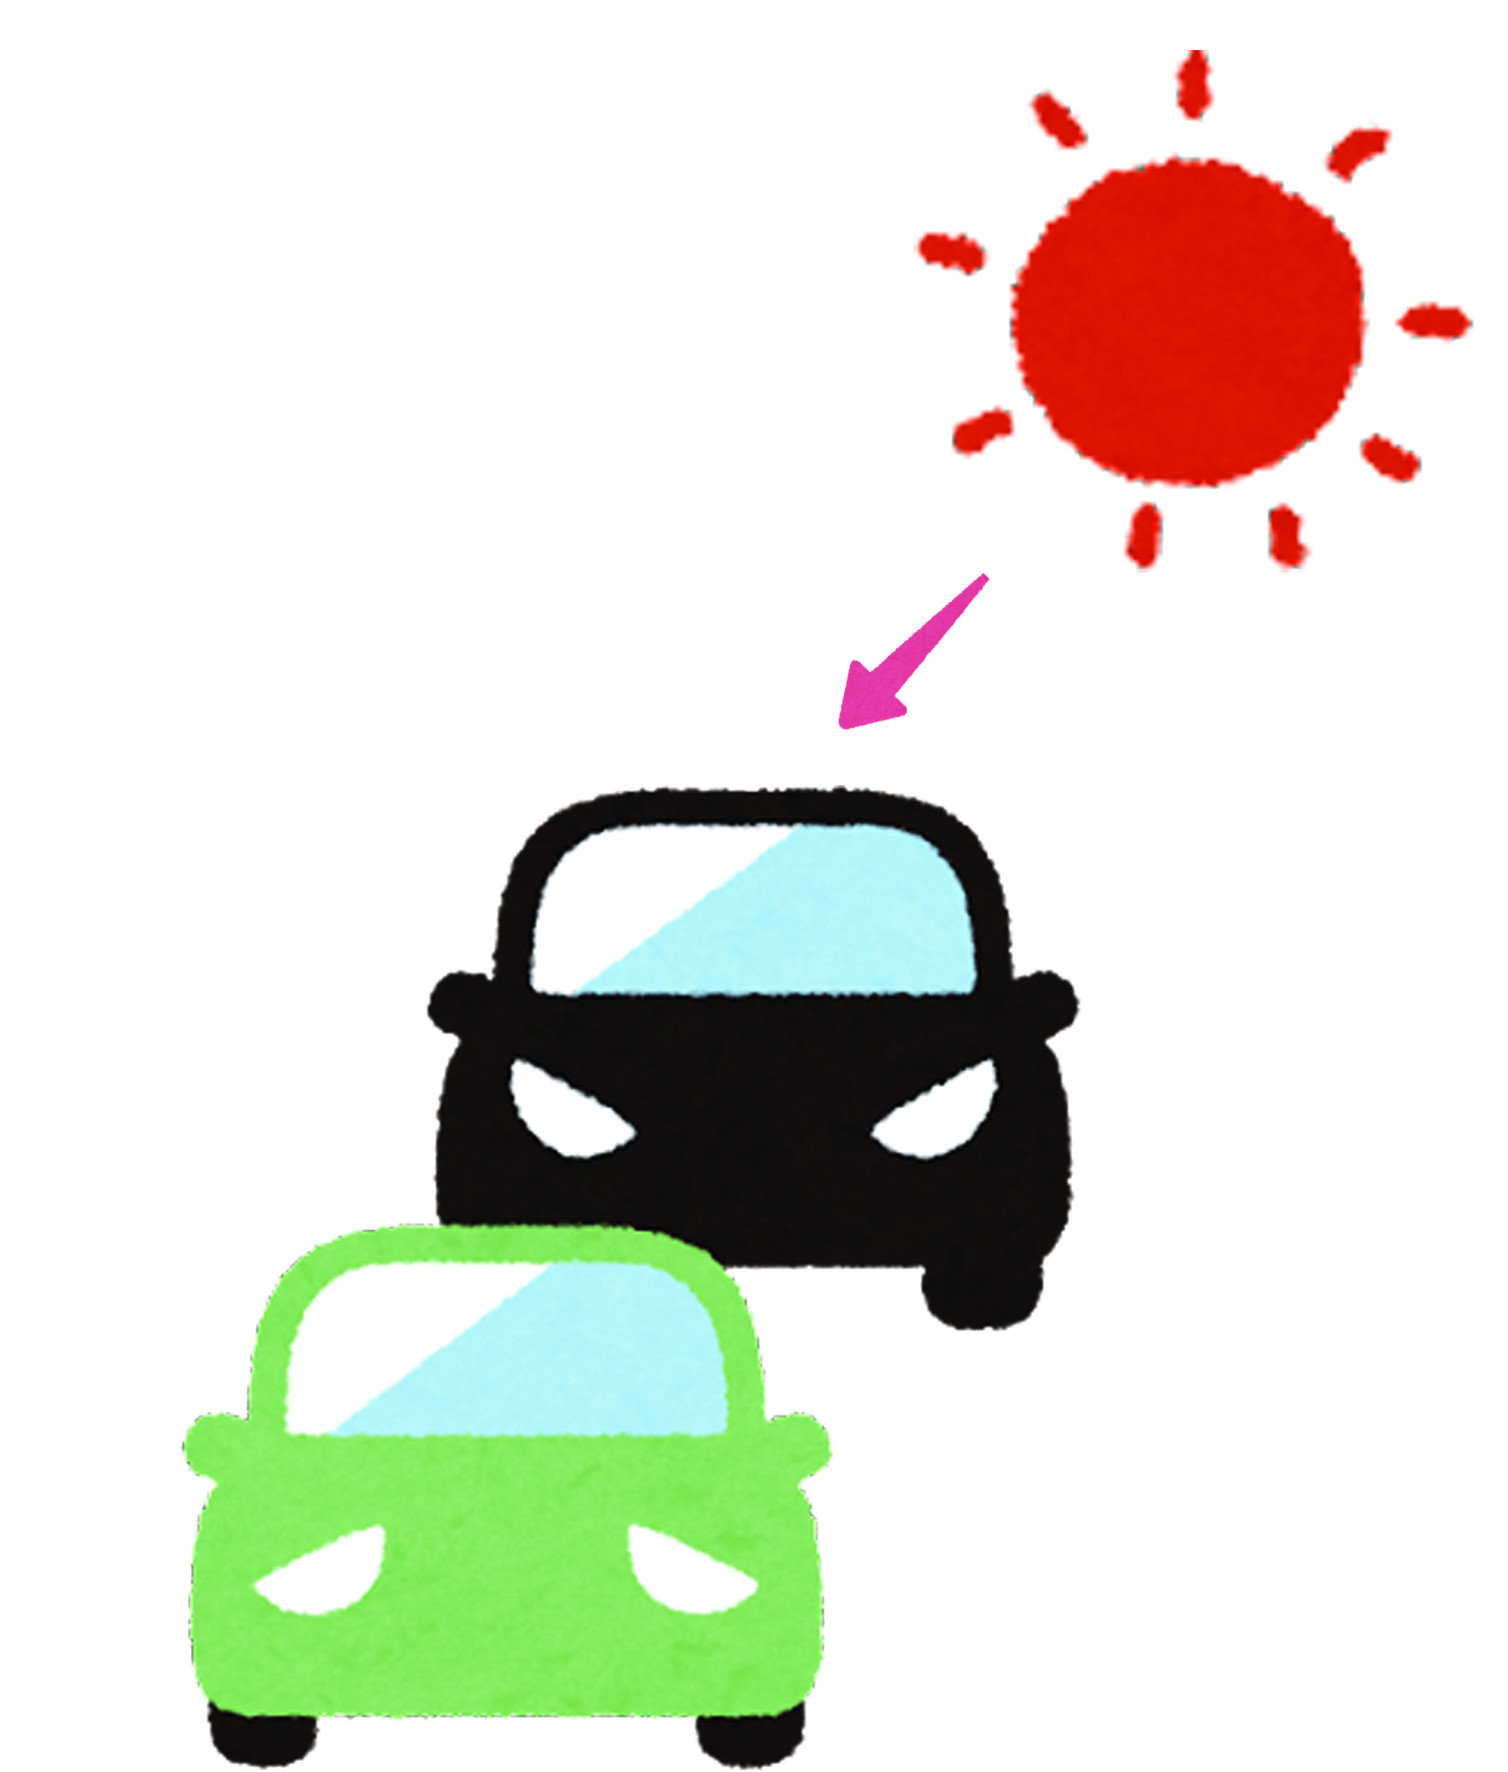 光觸媒塗層在淨化空氣、消毒表面之餘，其實還有一項隱藏的技能。無論是車子的皮件還是塑料，其實都相當怕陽光長時間不斷的照射，不僅可能讓表面褪色，也會加入皮件與塑料的老化，例如皮坐墊破裂。總而言之，光觸媒在「空氣清淨」、「消毒滅菌」、「車窗整潔」與「吸收紫外線」都有很好的表現，是愛車之人的好選擇。